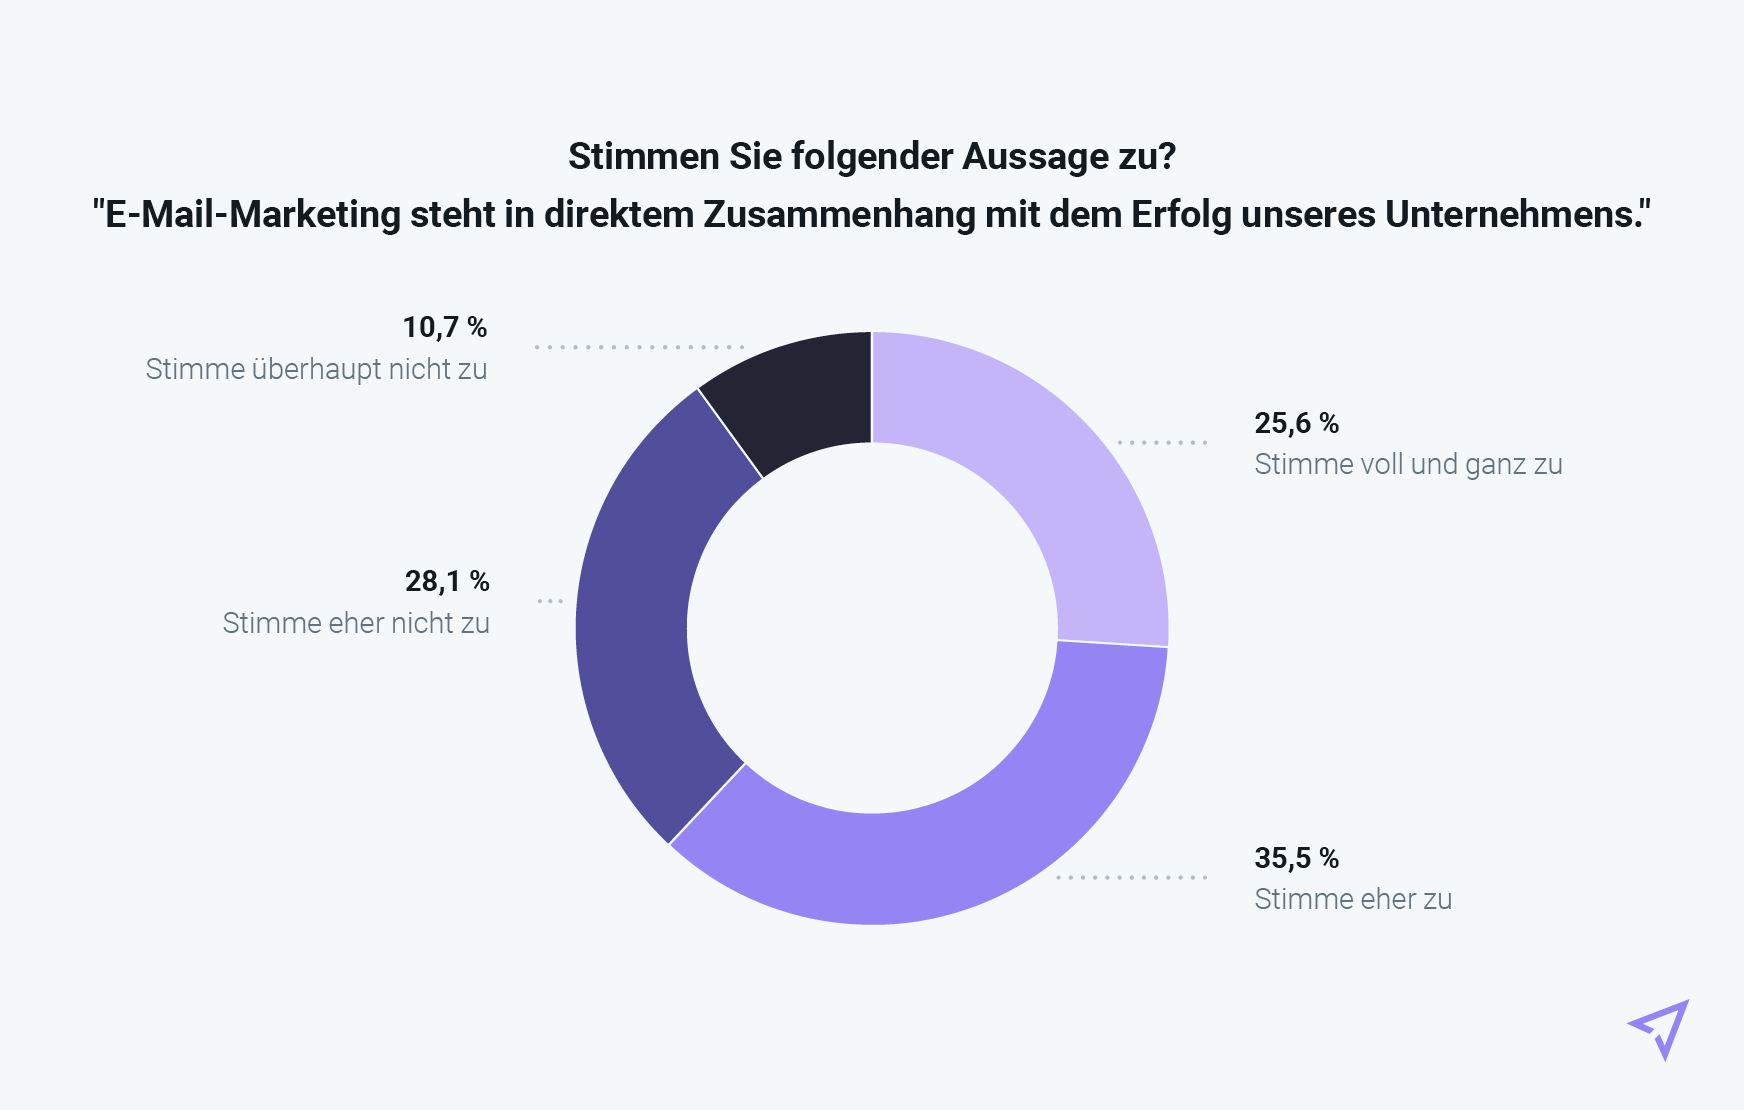 Donut-Diagramm, welches E-Mail-Marketing im direkten Zusammenhang mit dem Geschäftserfolg in Deutschland zeigt